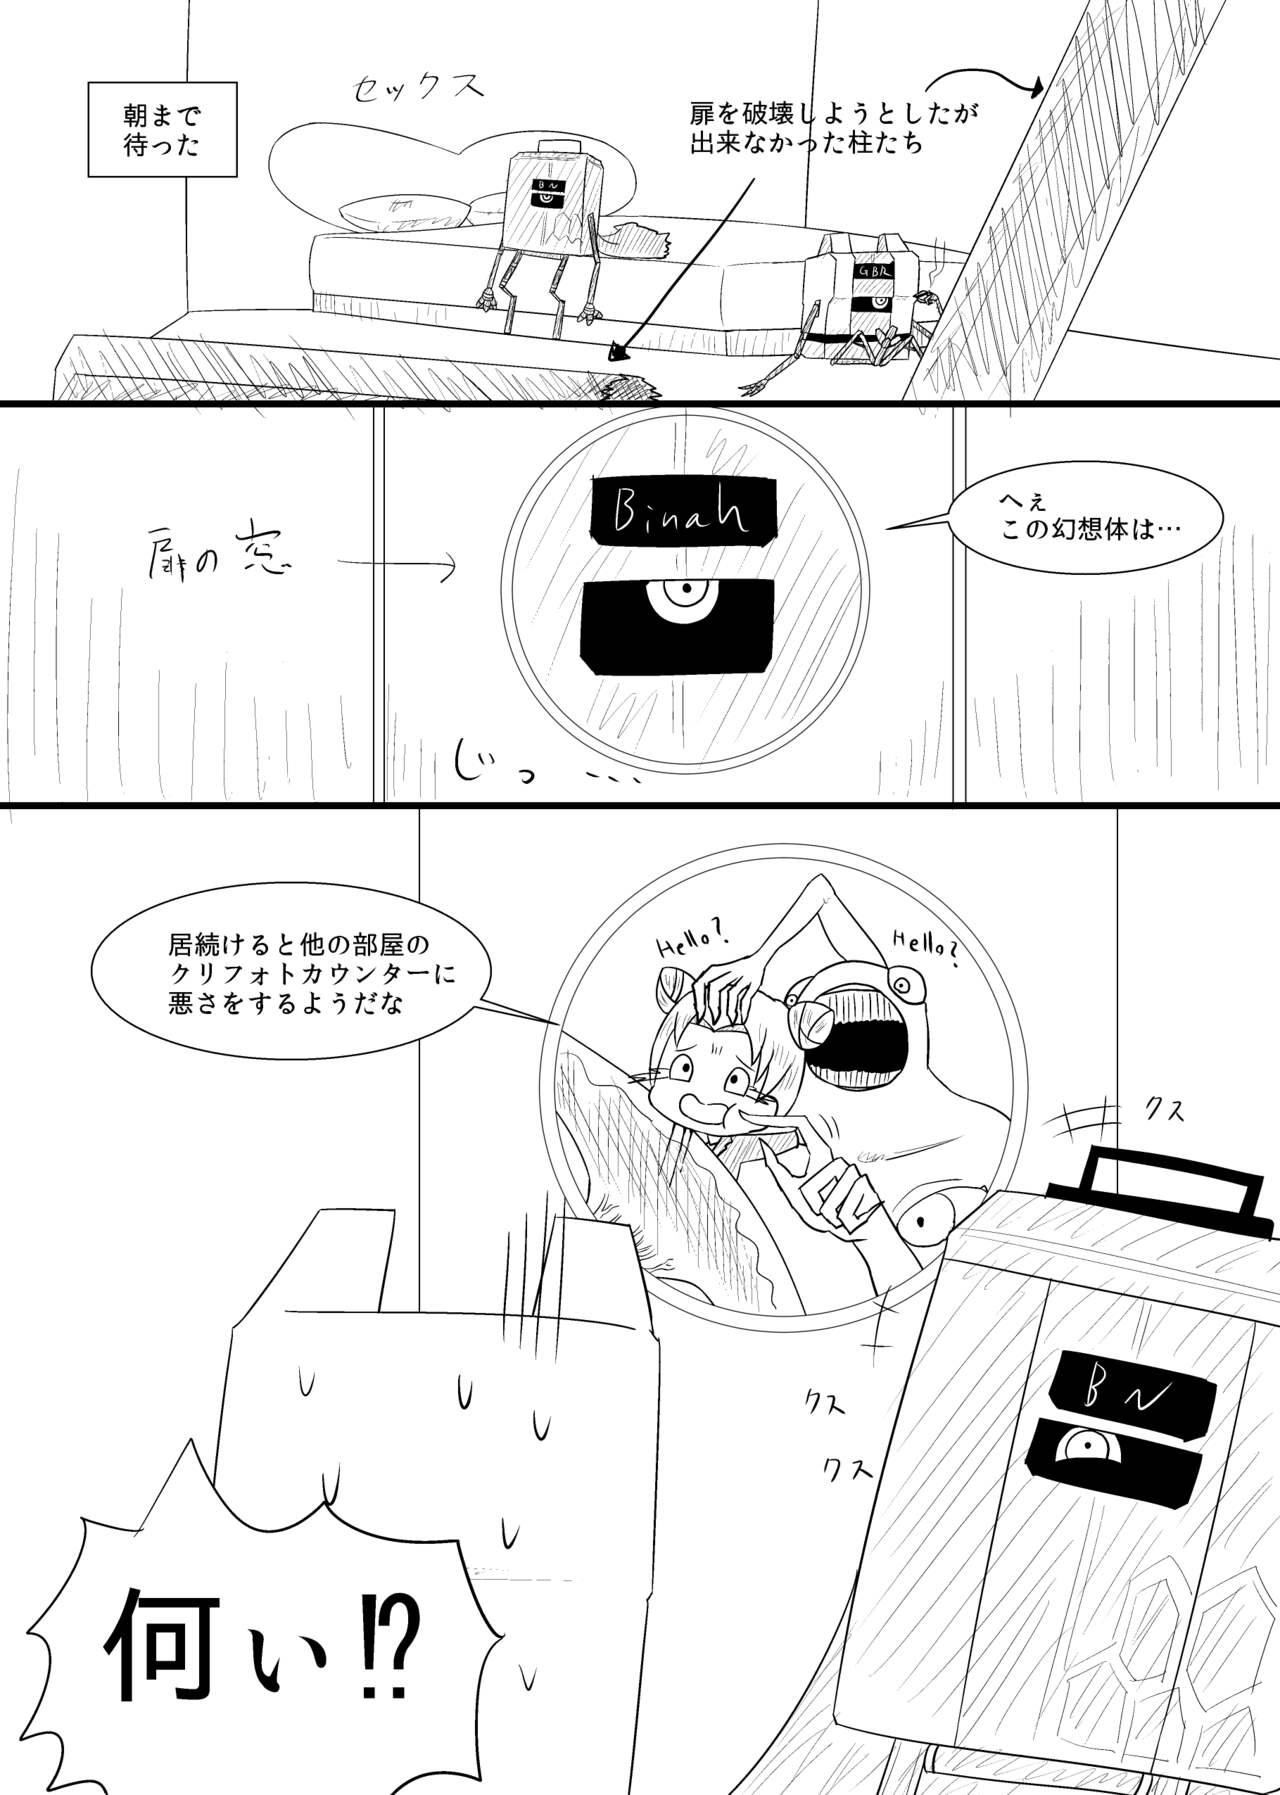 Peituda Rikuesuto no Manga - Lobotomy corporation Putas - Page 5